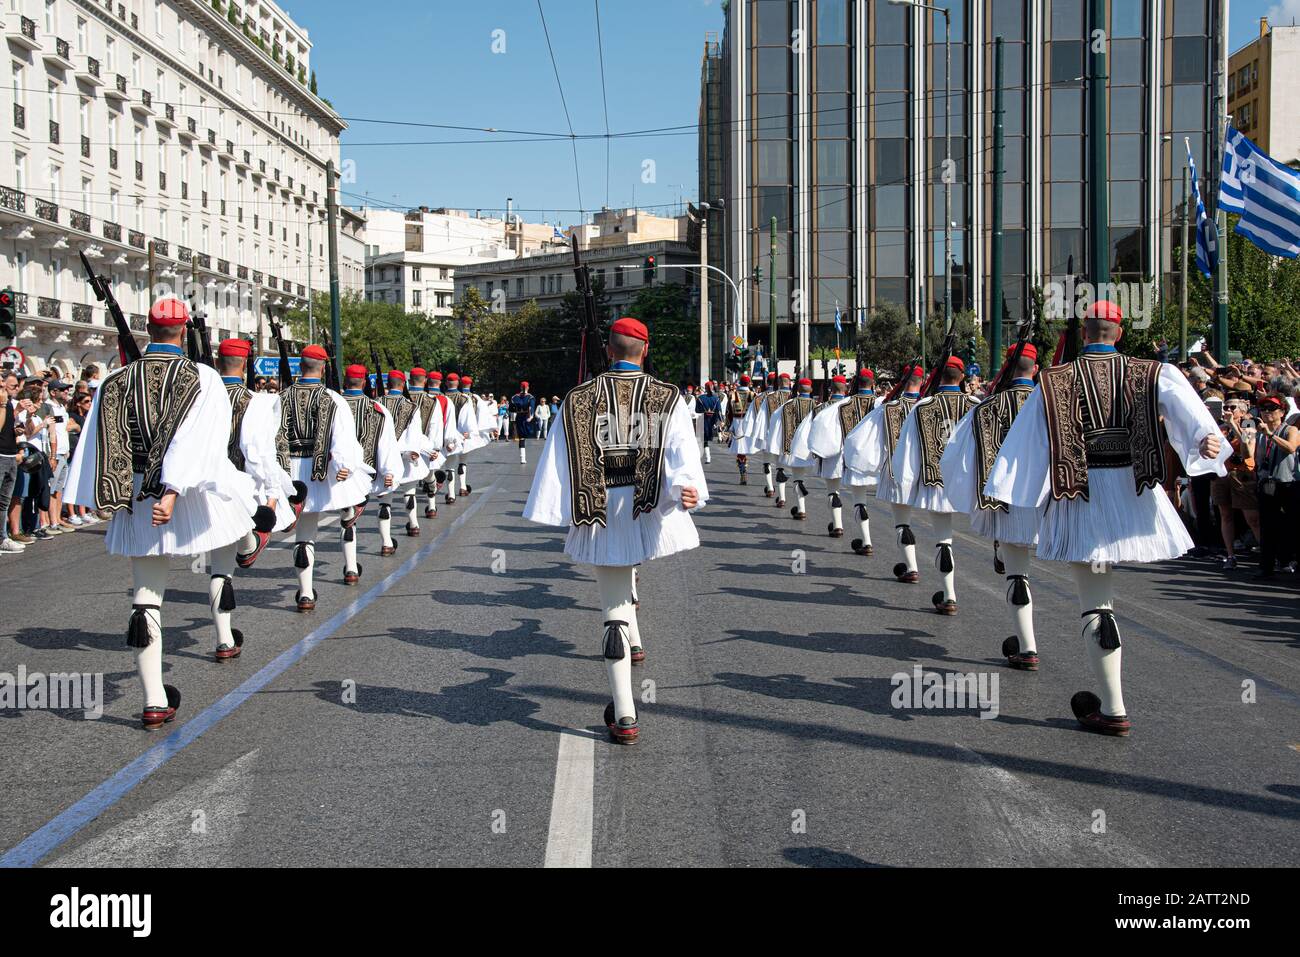 Atene, Grecia, 22 settembre 2019: Guardie di evzone presidenziali greche vestite di uniformi tradizionali, sfilate in piazza Syntagam ad Atene Grecia Foto Stock